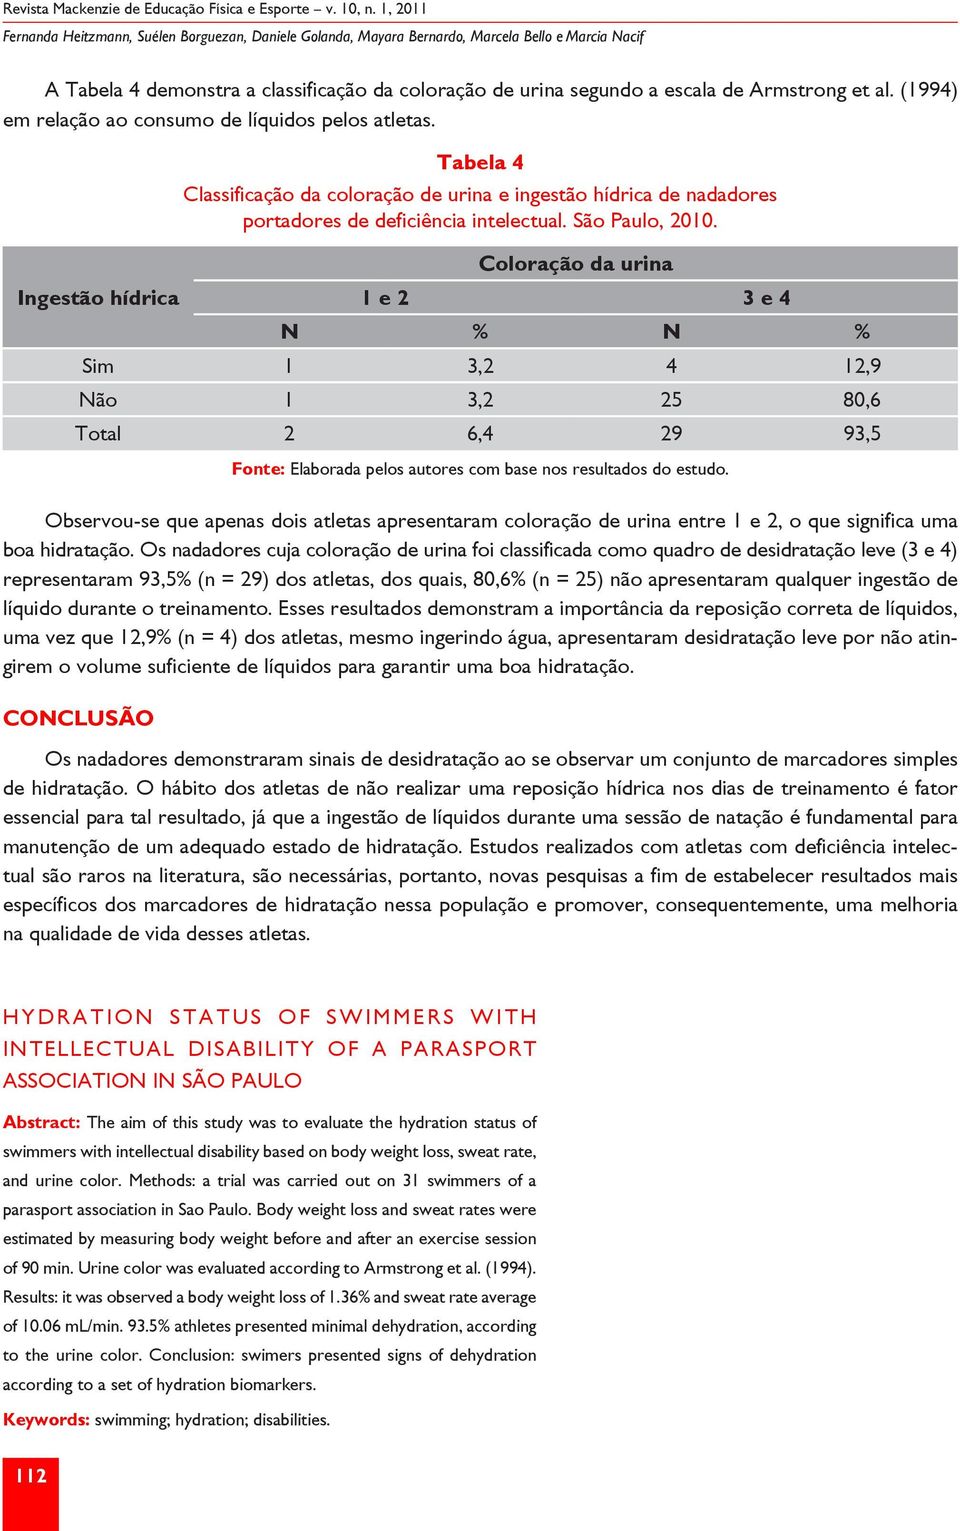 São Paulo, 2010. Coloração da urina 1 e 2 3 e 4 N % N % Sim 1 3,2 4 12,9 Não 1 3,2 25 80,6 Total 2 6,4 29 93,5 Fonte: Elaborada pelos autores com base nos resultados do estudo.